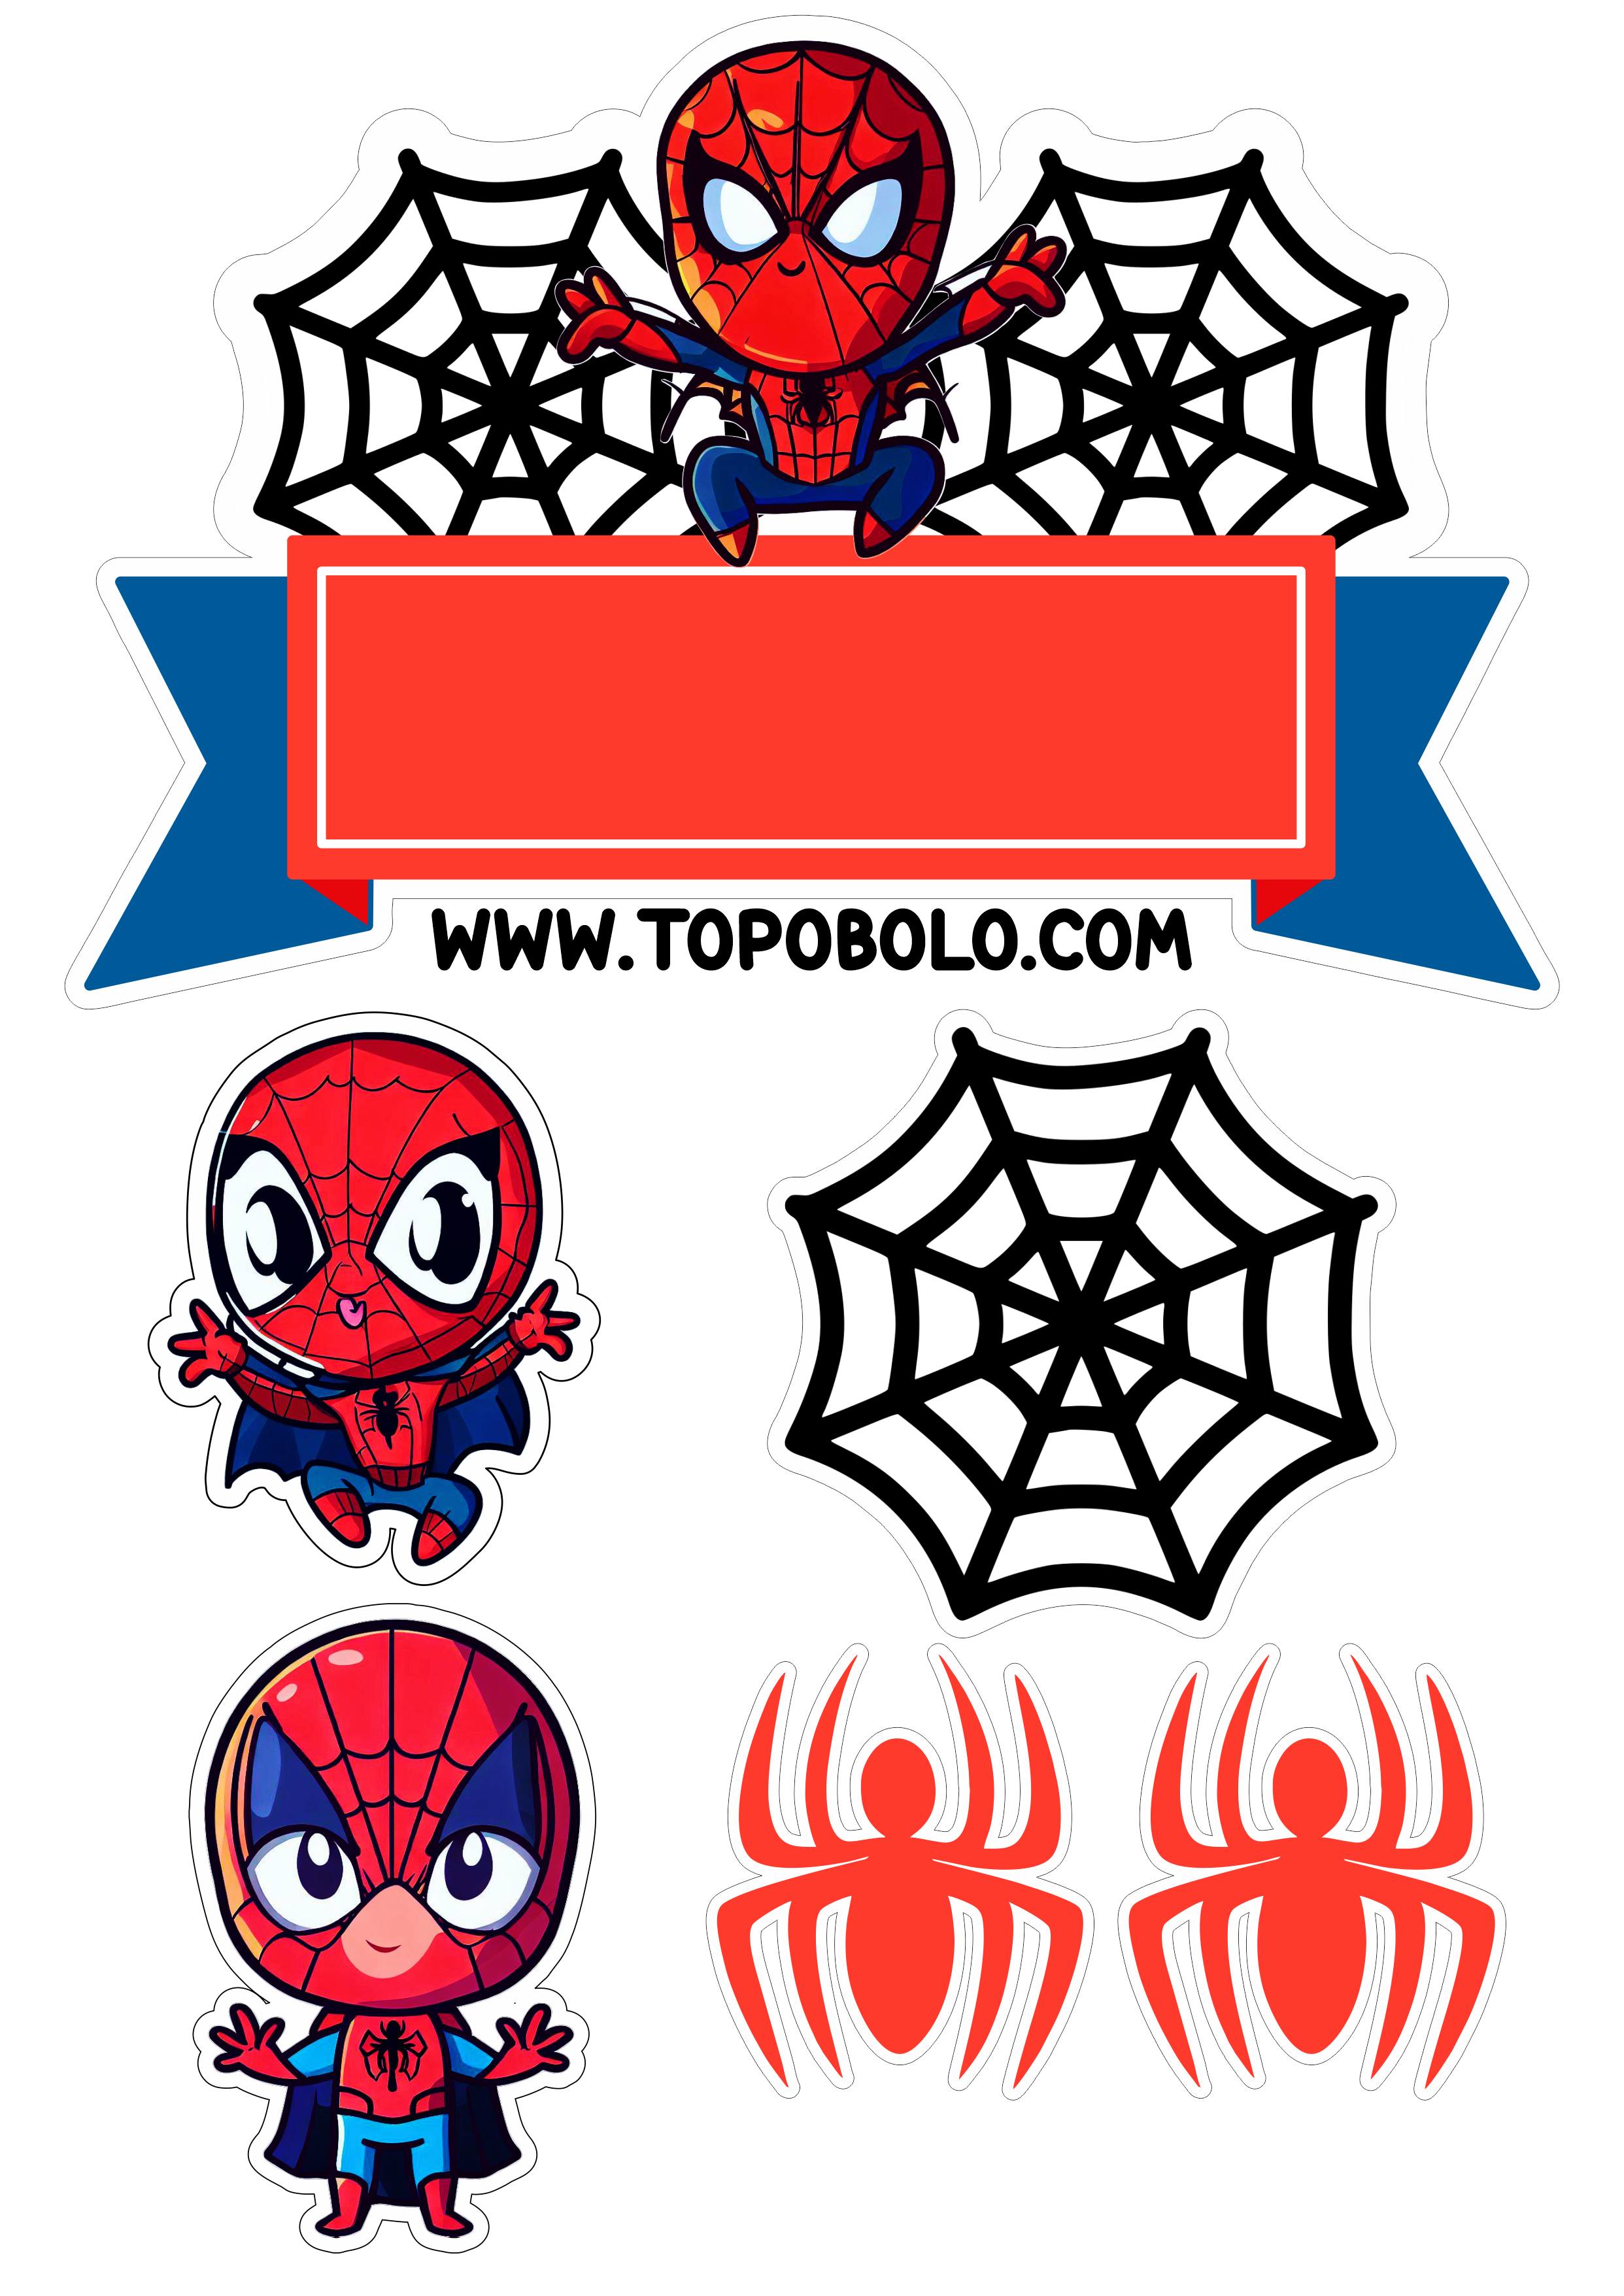 Homem-Aranha aniversário infantil Topo de bolo para imprimir Spider-Man cute chibi papelaria criativa png